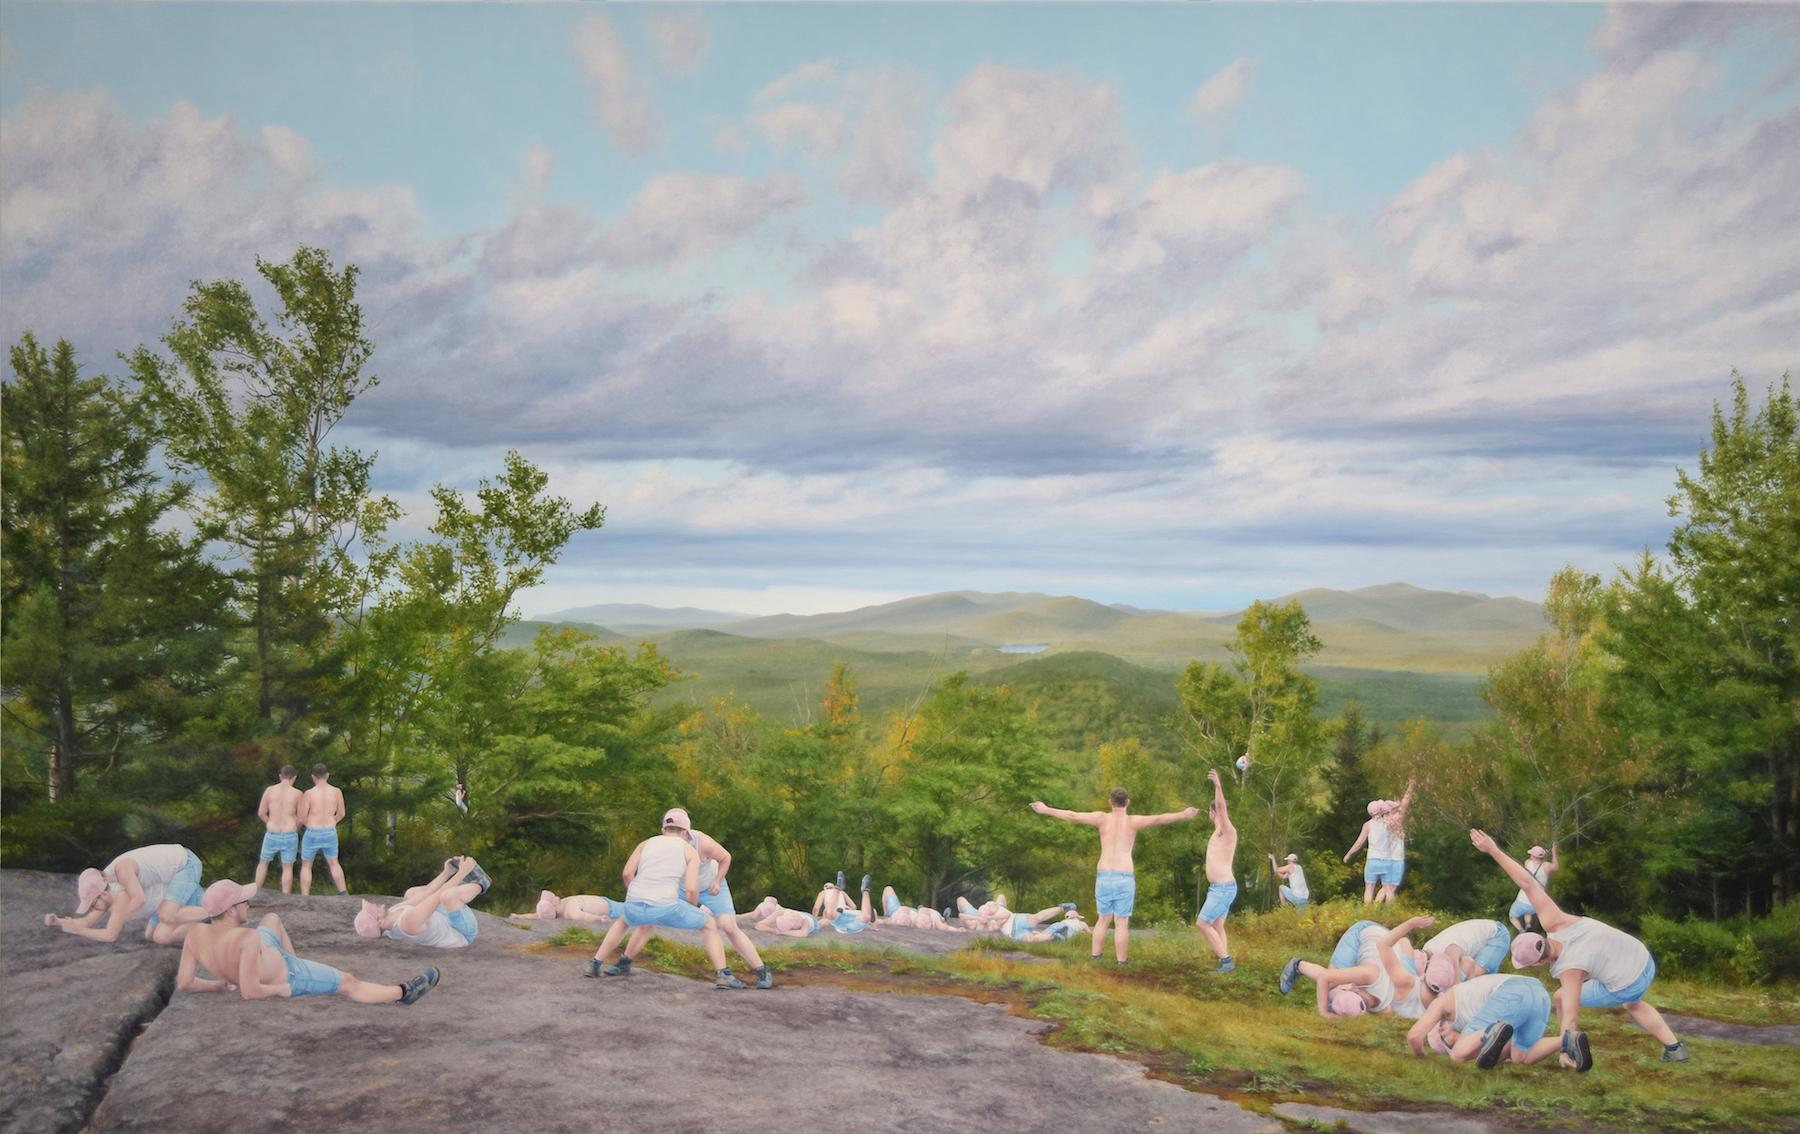 Cobi Moules Figurative Painting - Untitled (Adirondacks) - Figurative landscape painting